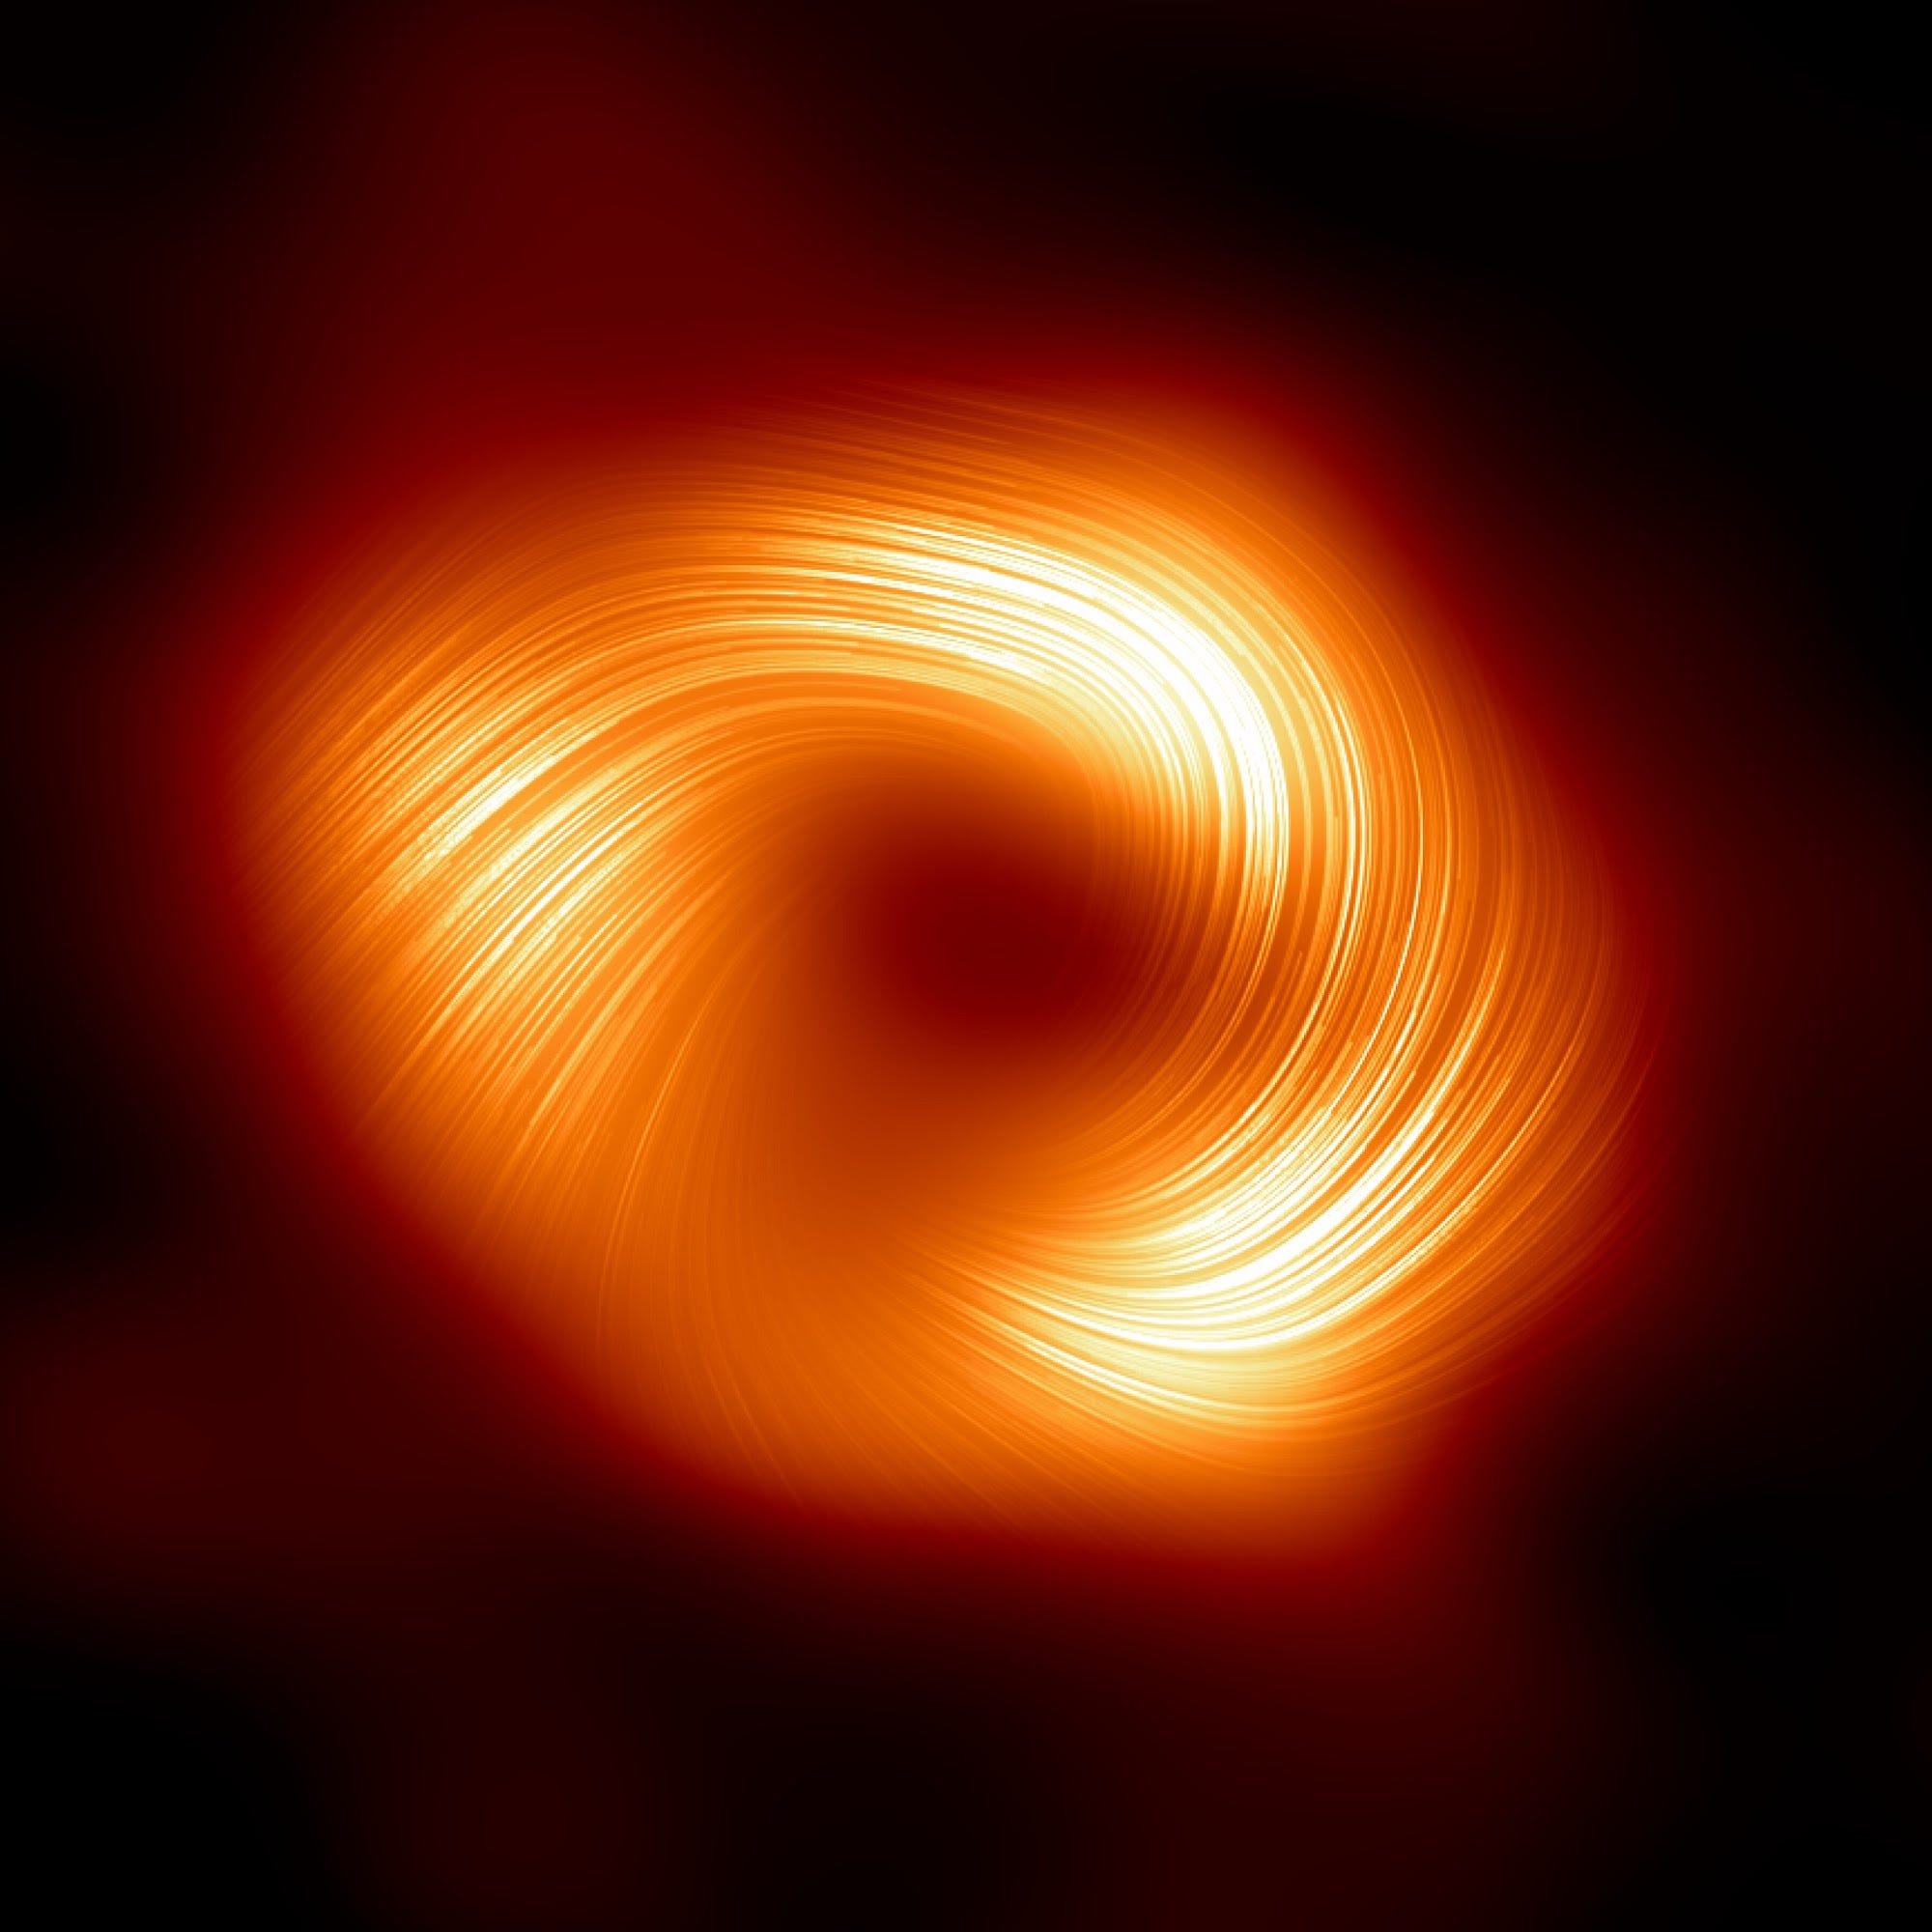 Das Polarisationsbild eines Schwarzen Lochs zeigt einen Kreis aus hellgelbem und diffusem orangefarbenem Licht in der Schwärze des Weltraums mit Linien, die in eine Richtung entlang des Kreises wirbeln, und einem schwarzen Fleck in der Mitte